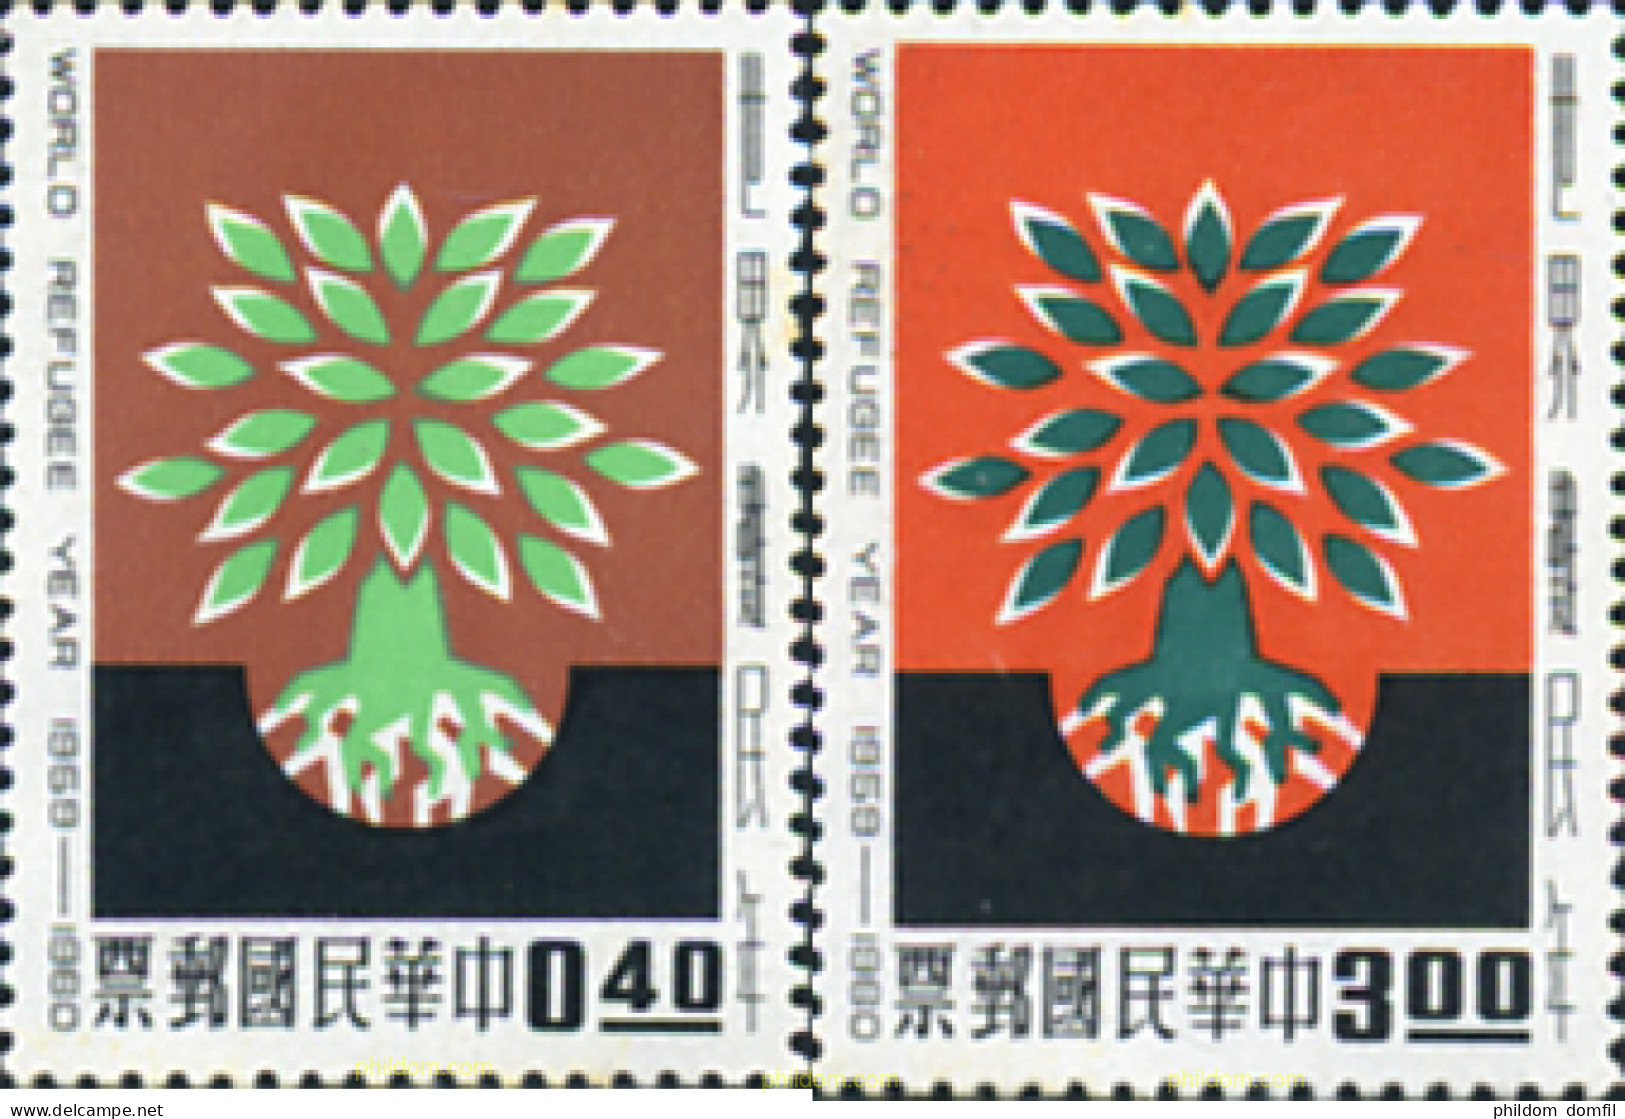 314562 MNH CHINA. FORMOSA-TAIWAN 1960 AÑO DE LOS REFUGIADOS - Neufs